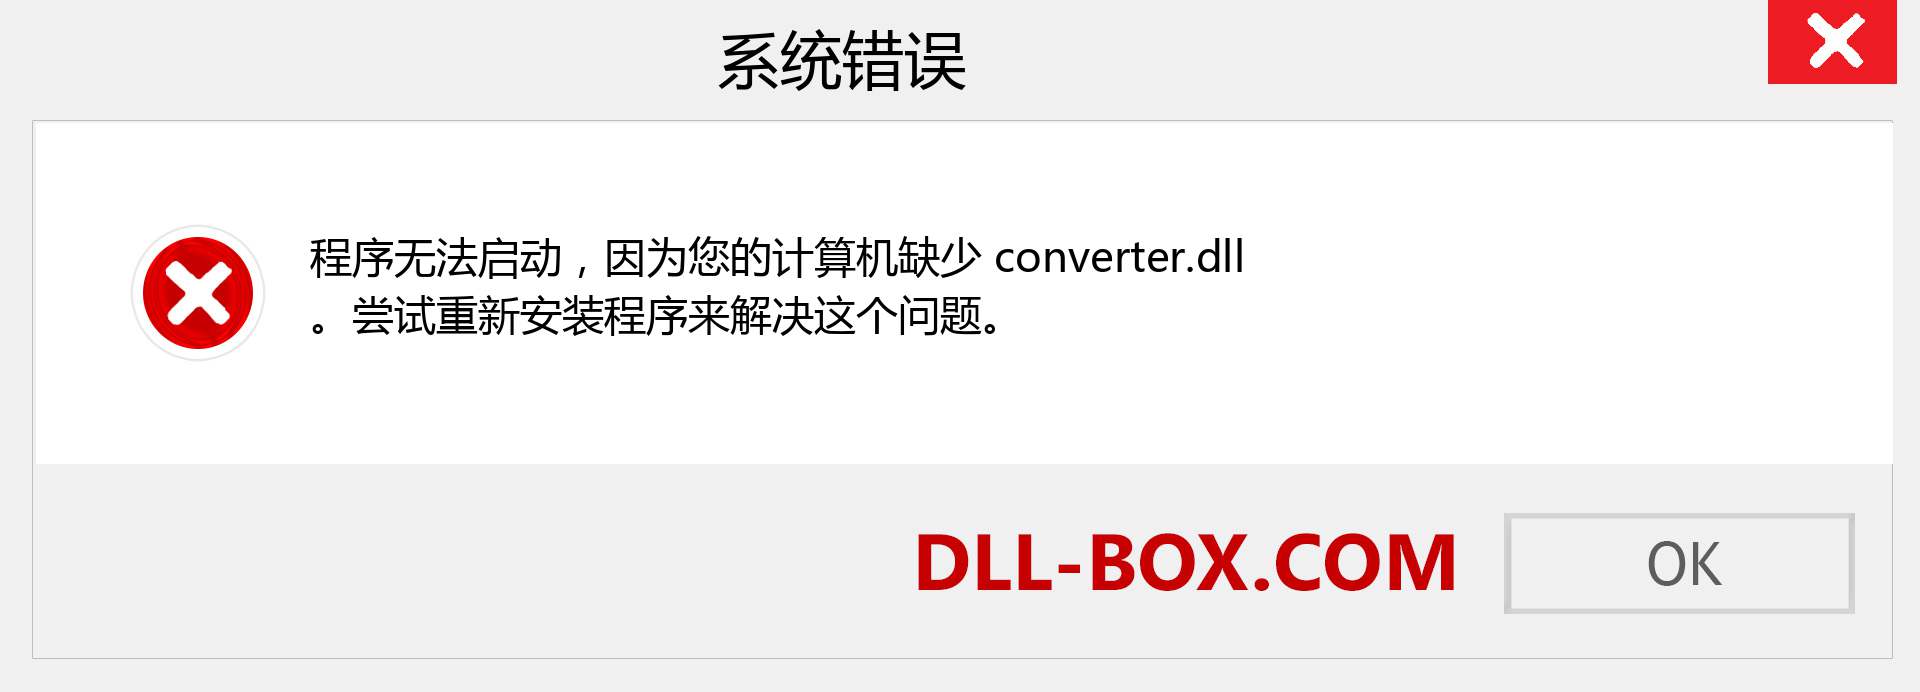 converter.dll 文件丢失？。 适用于 Windows 7、8、10 的下载 - 修复 Windows、照片、图像上的 converter dll 丢失错误